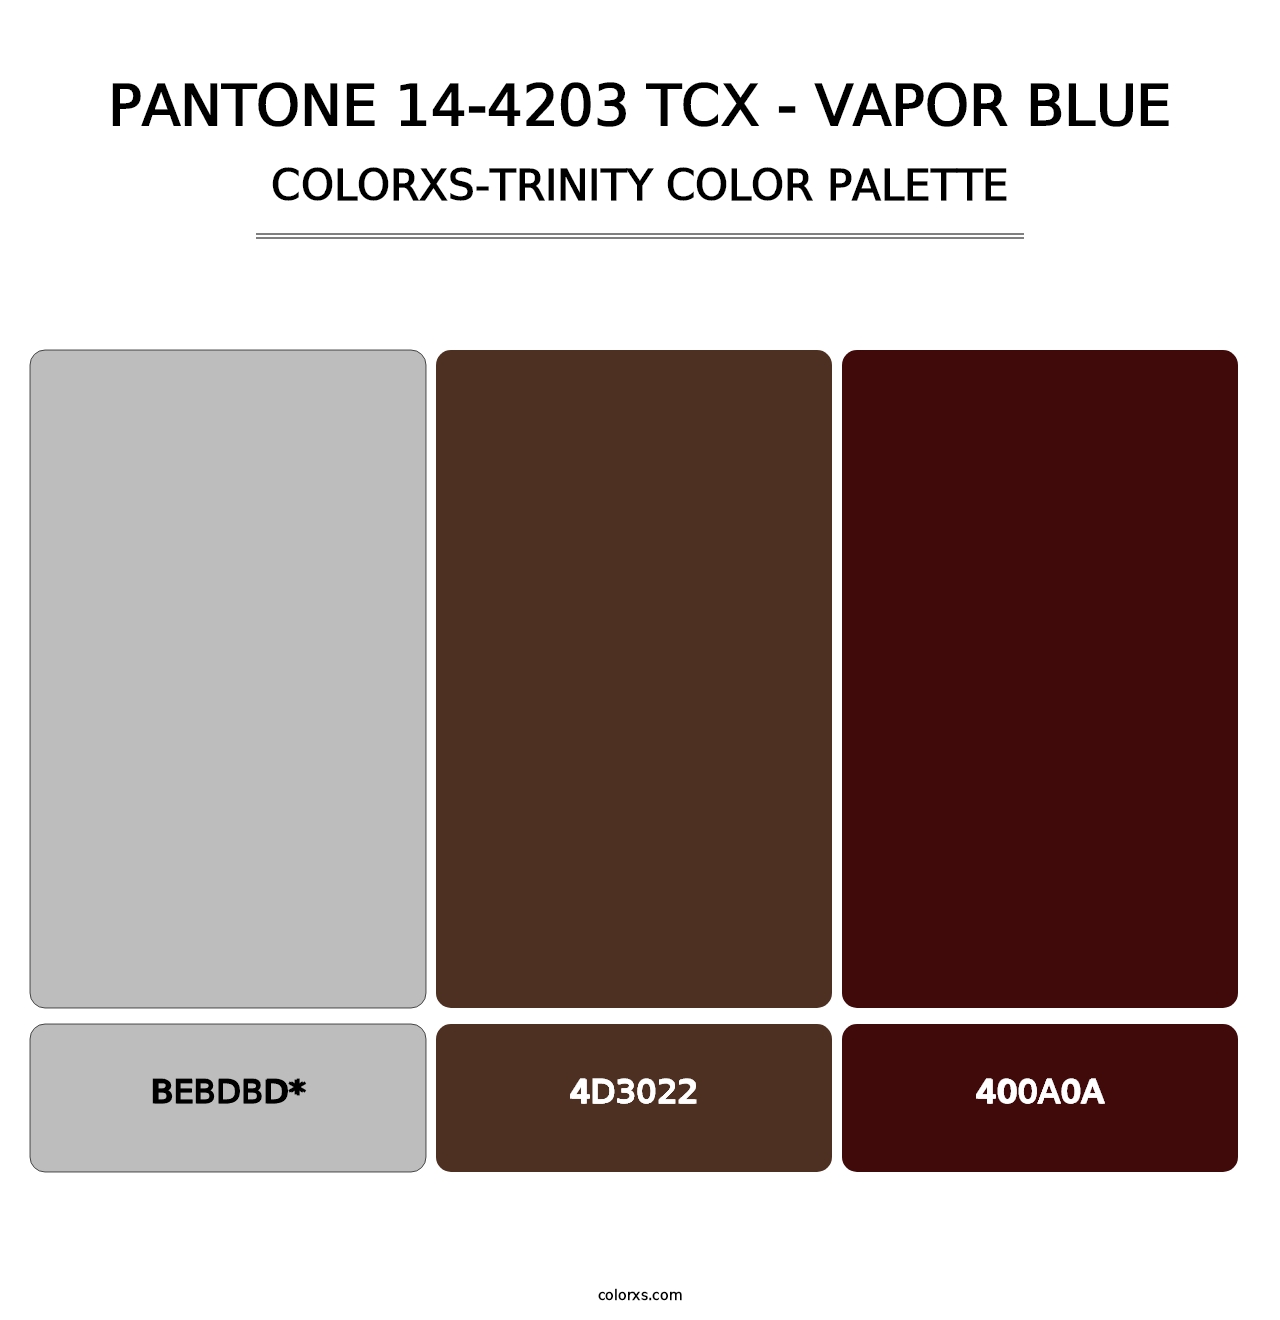 PANTONE 14-4203 TCX - Vapor Blue - Colorxs Trinity Palette